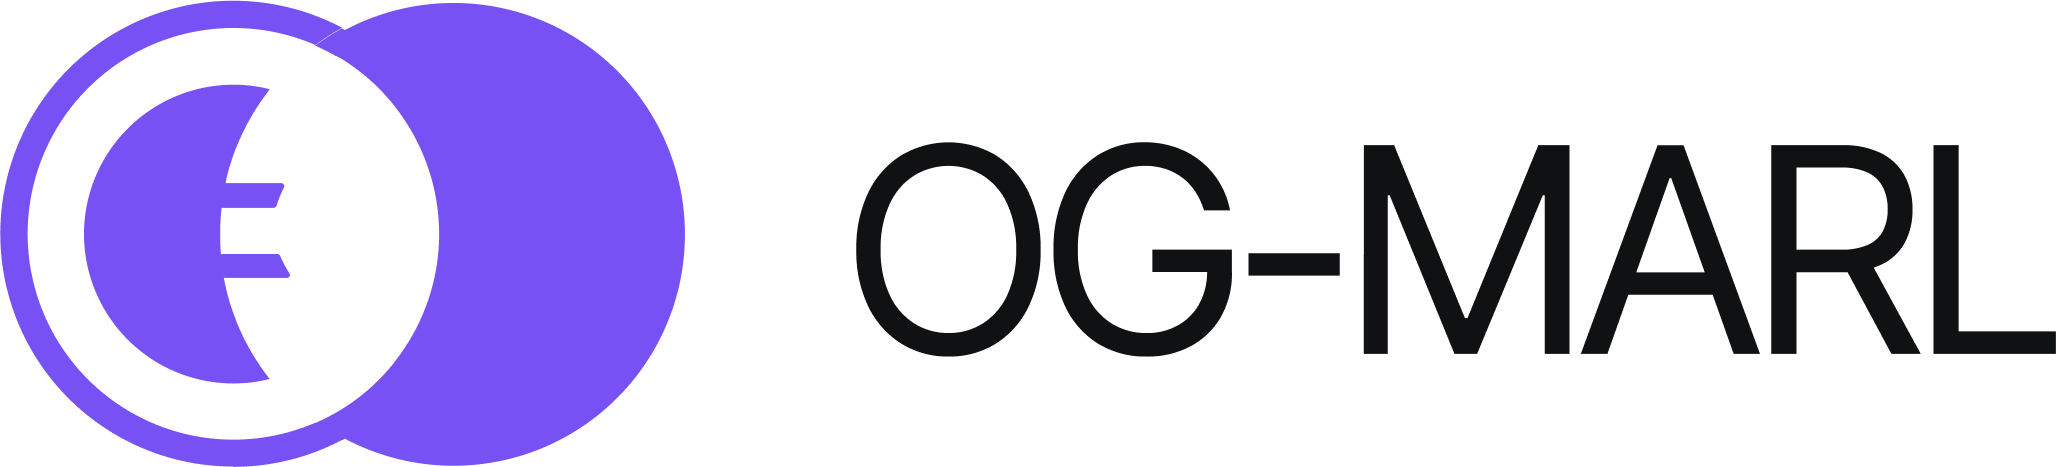 OG-MARL logo